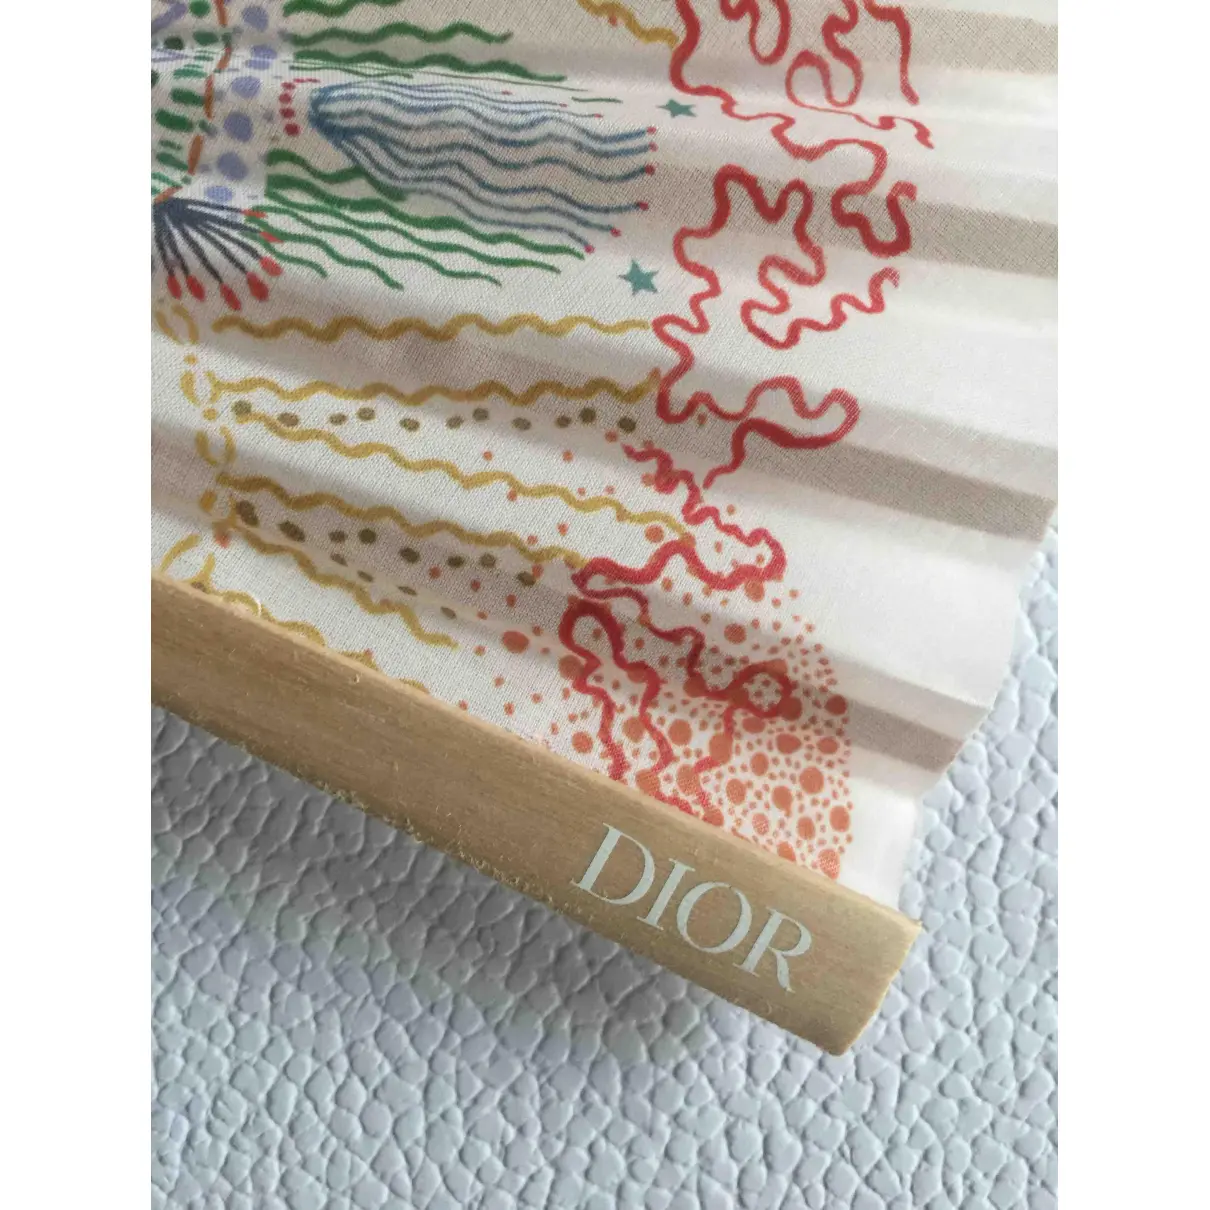 Buy Dior Linen fan online